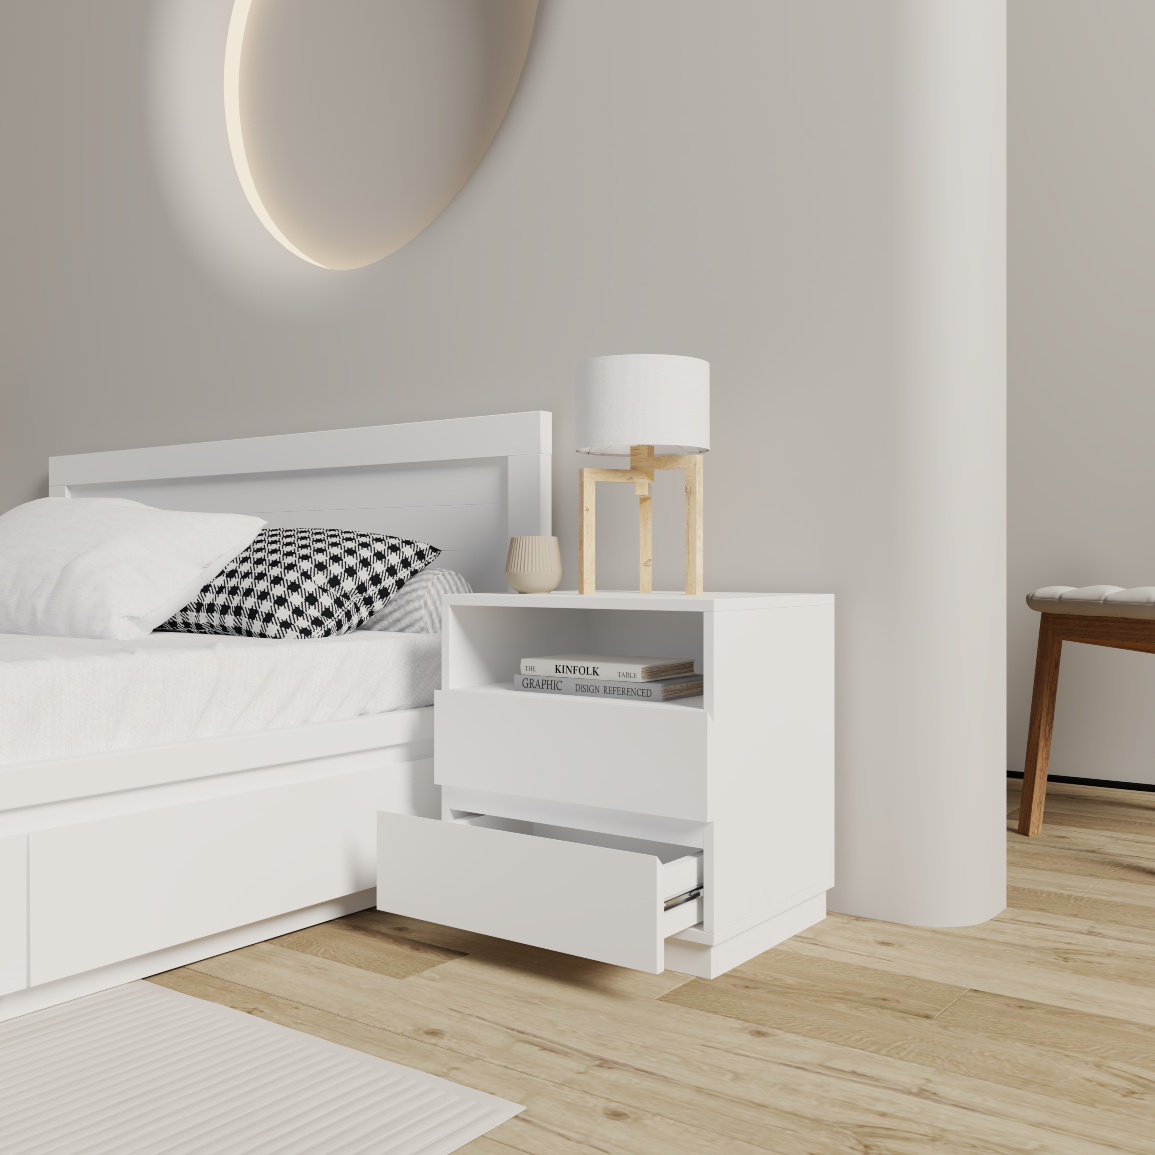 [Happy Home Furniture] MACRO, Táp đầu giường 3 ngăn ,  50cm x 40cm x 52cm ( DxRxC), THK_037